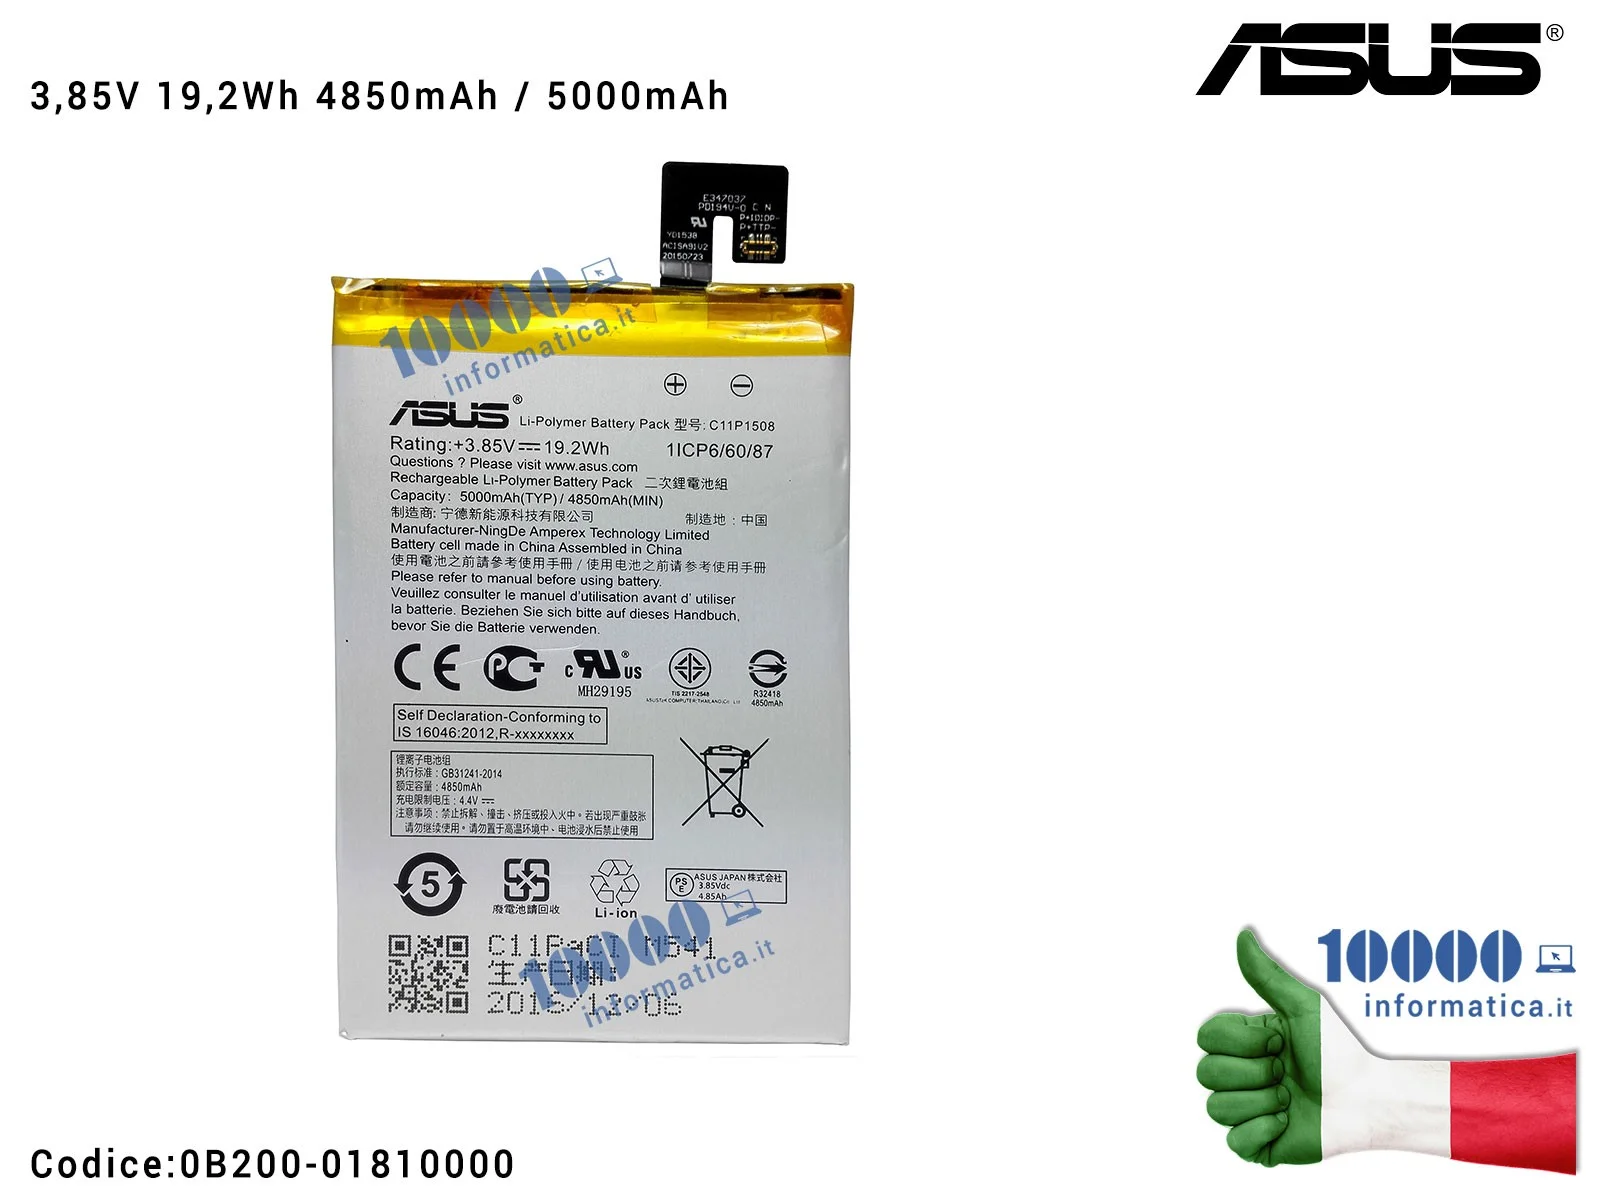 0B200-01810000 Batteria C11P1508 ASUS ZenFone Max ZC550KL (Z010D) [3,85V 19,2Wh 5000mAh]